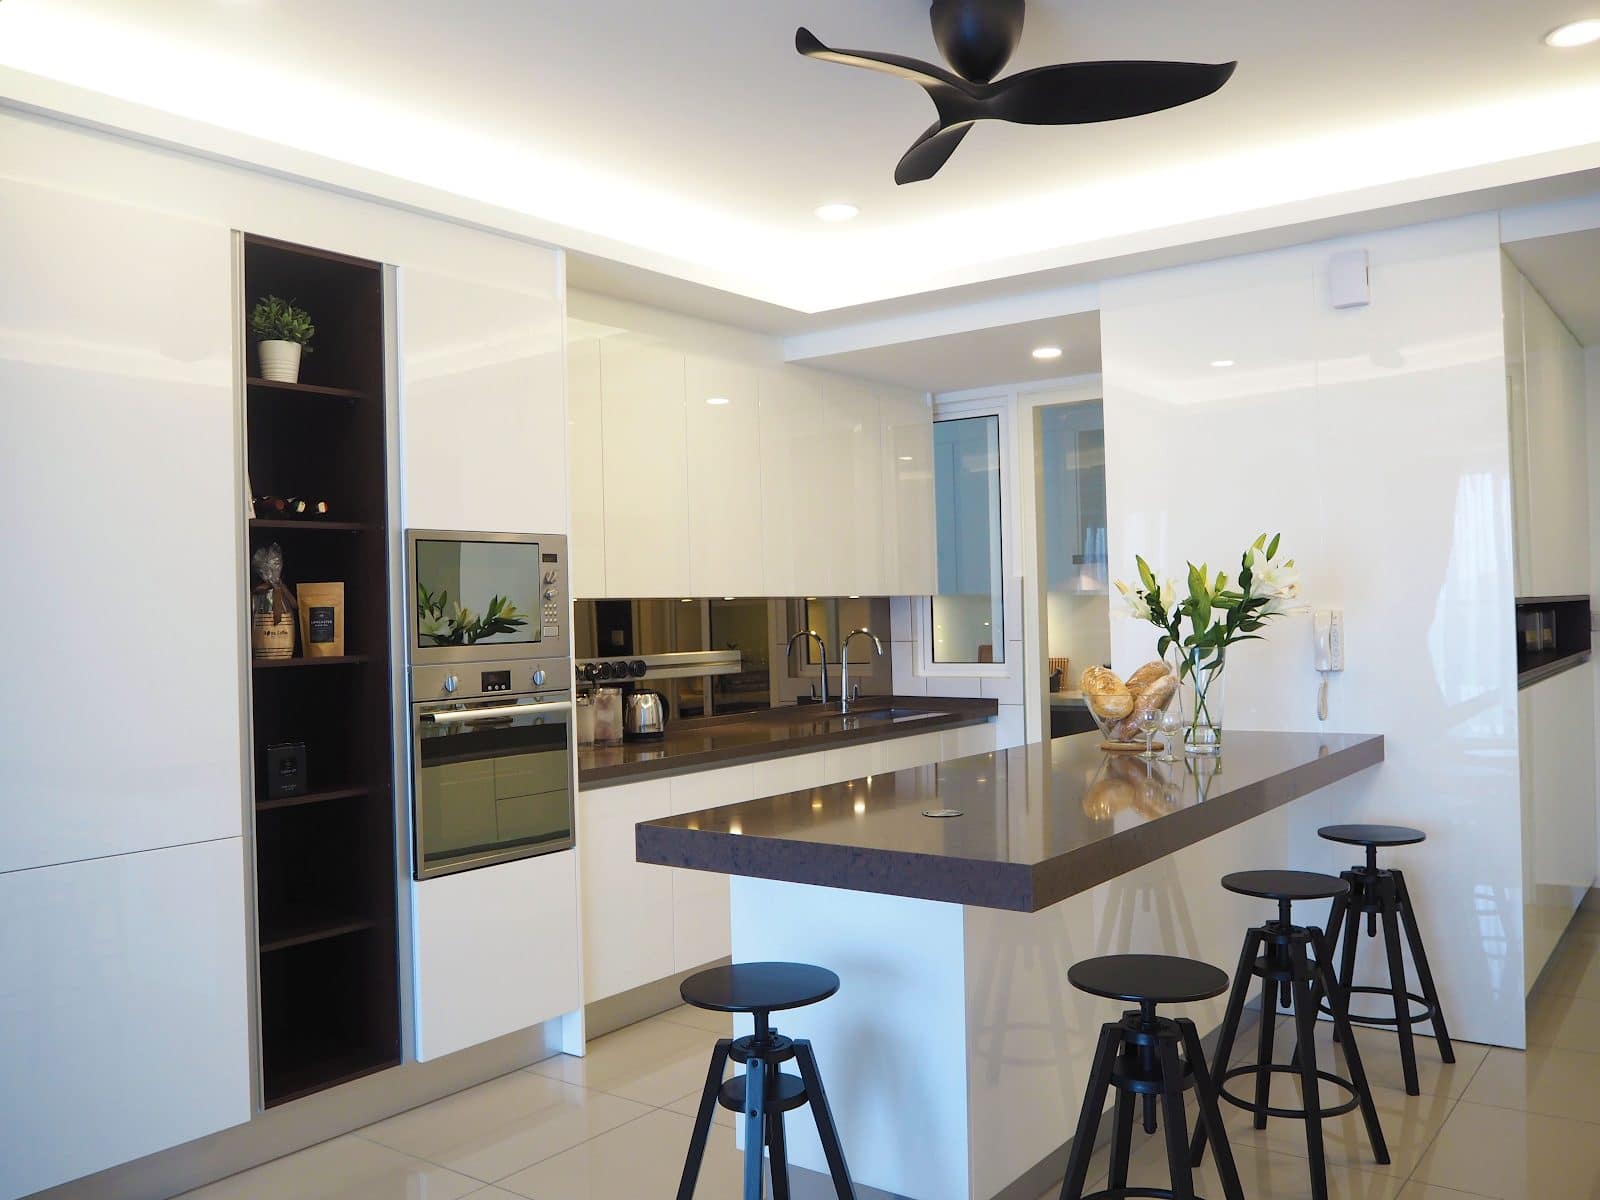 kitchen interior design long island